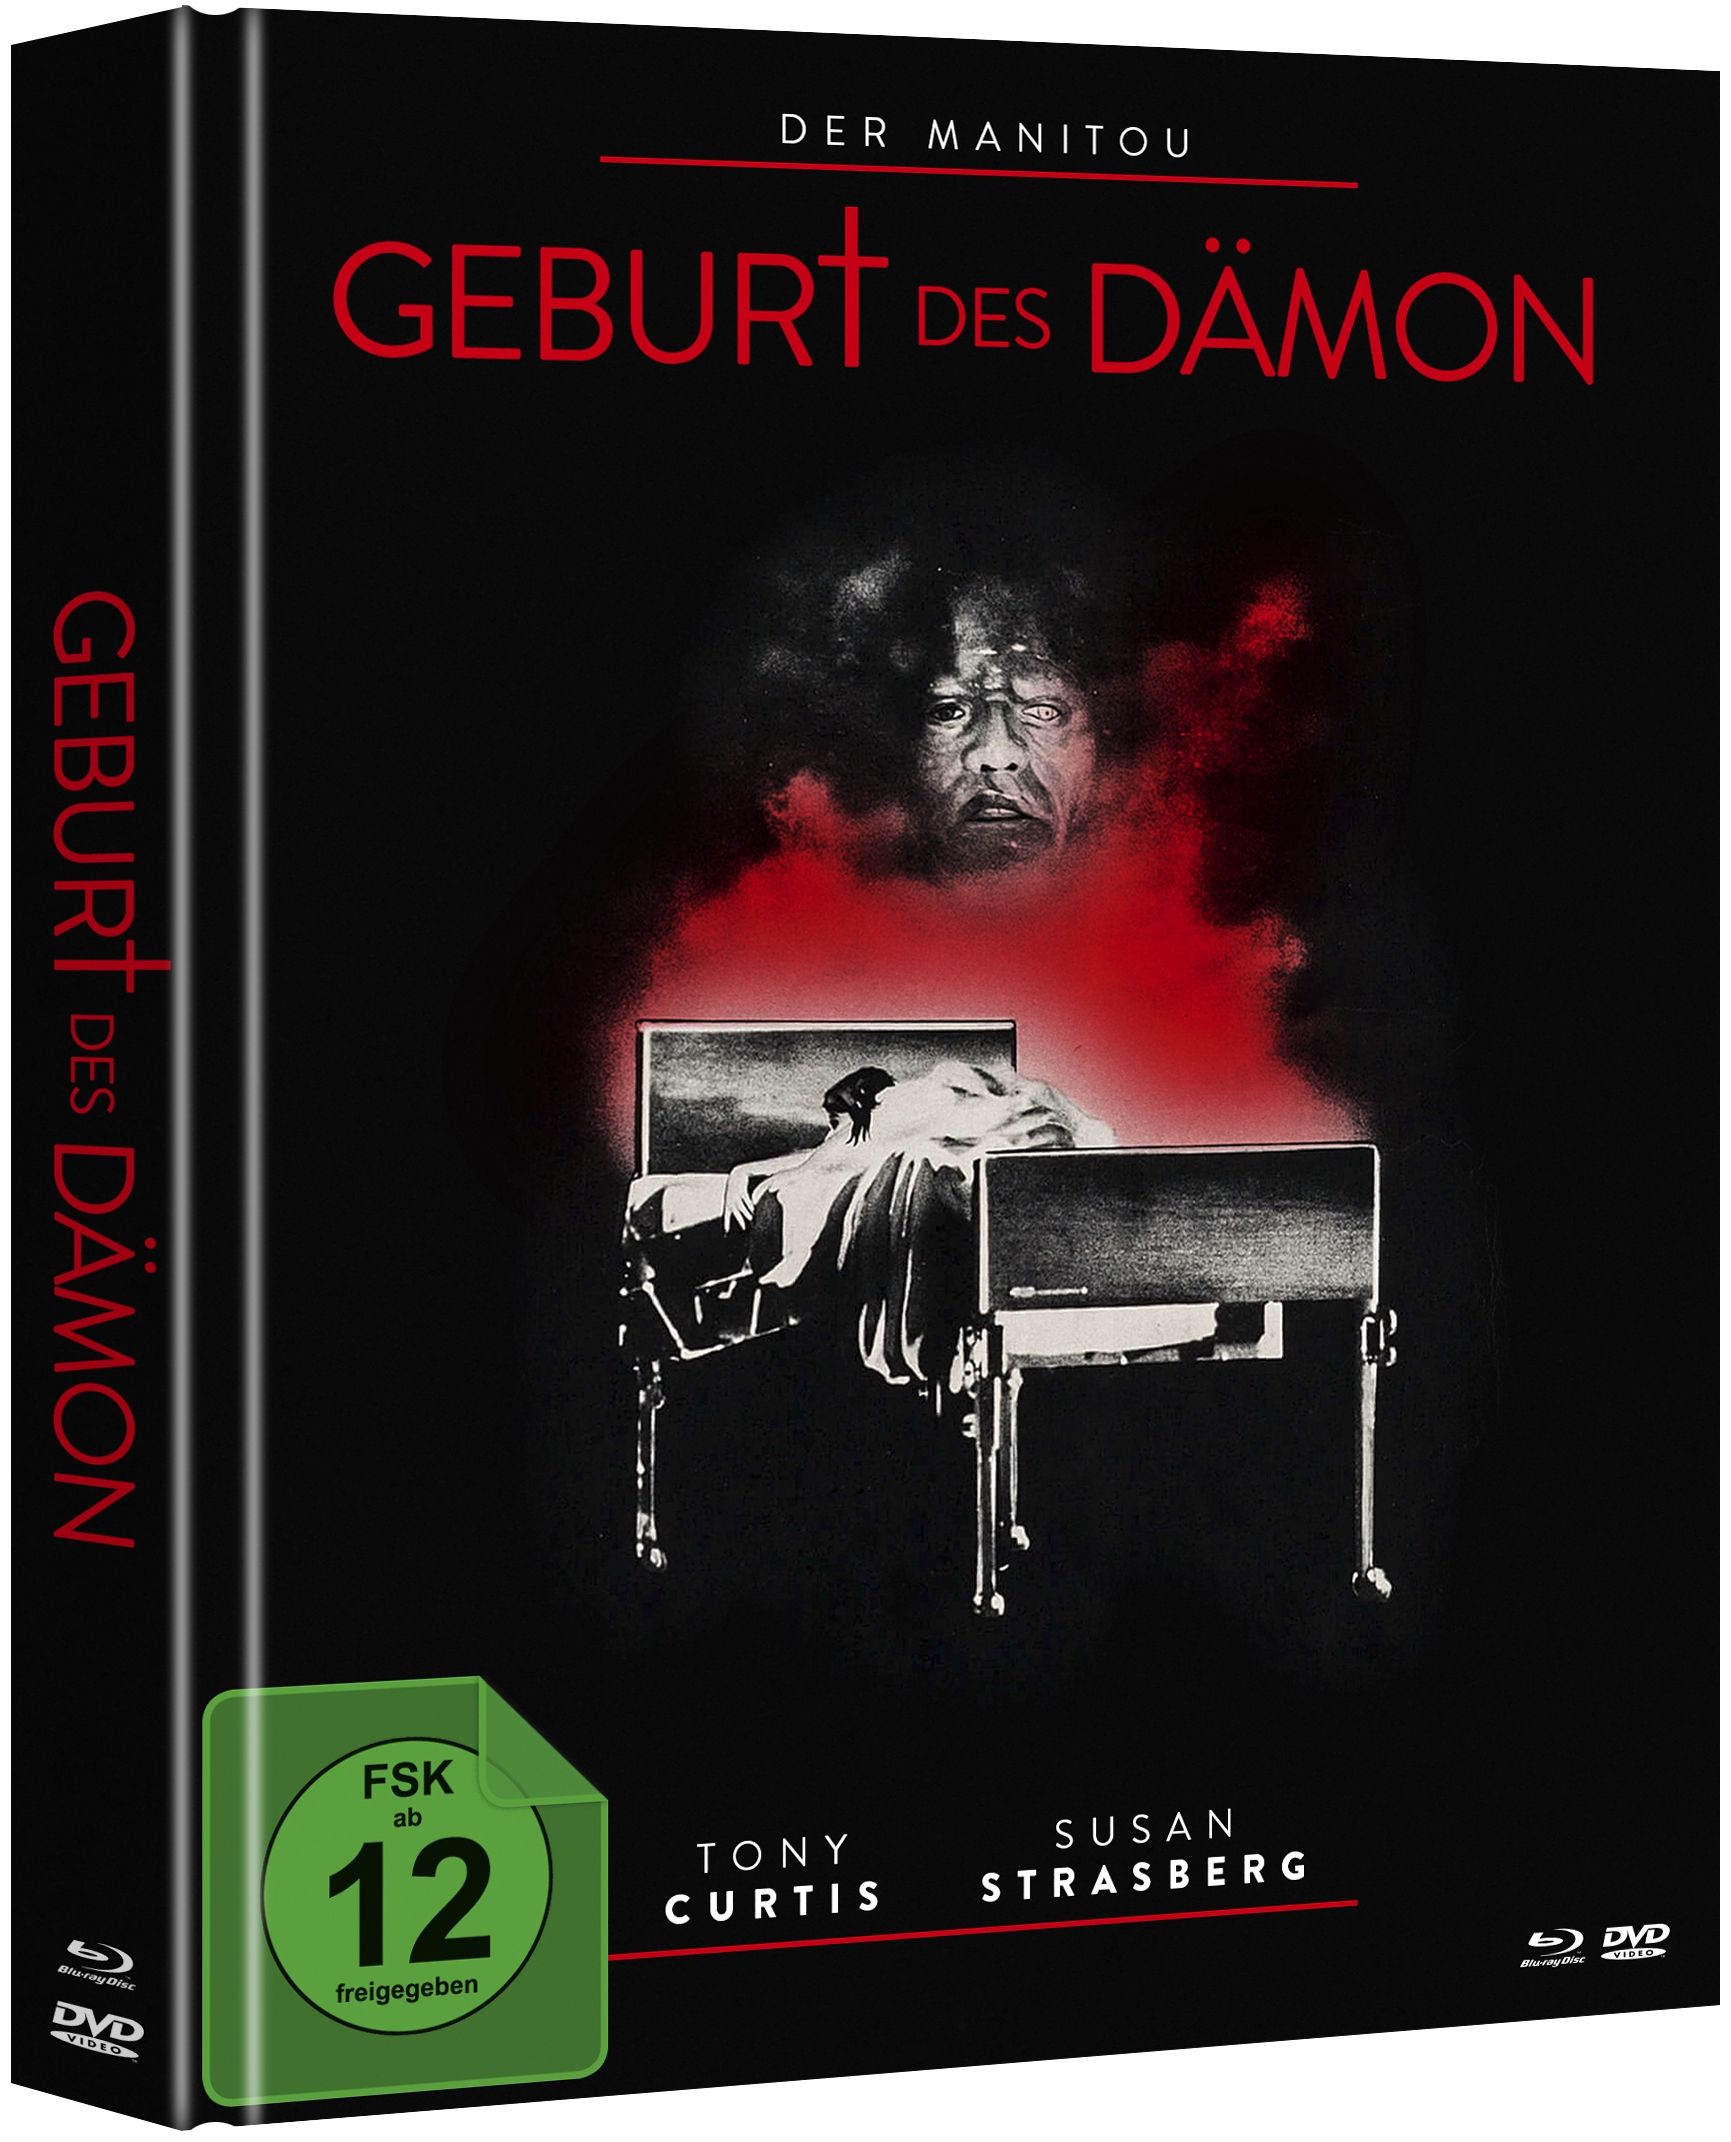 Manitou, Der - Geburt des Dämon (Lim. Uncut Mediabook - Cover B) (DVD + BLURAY)